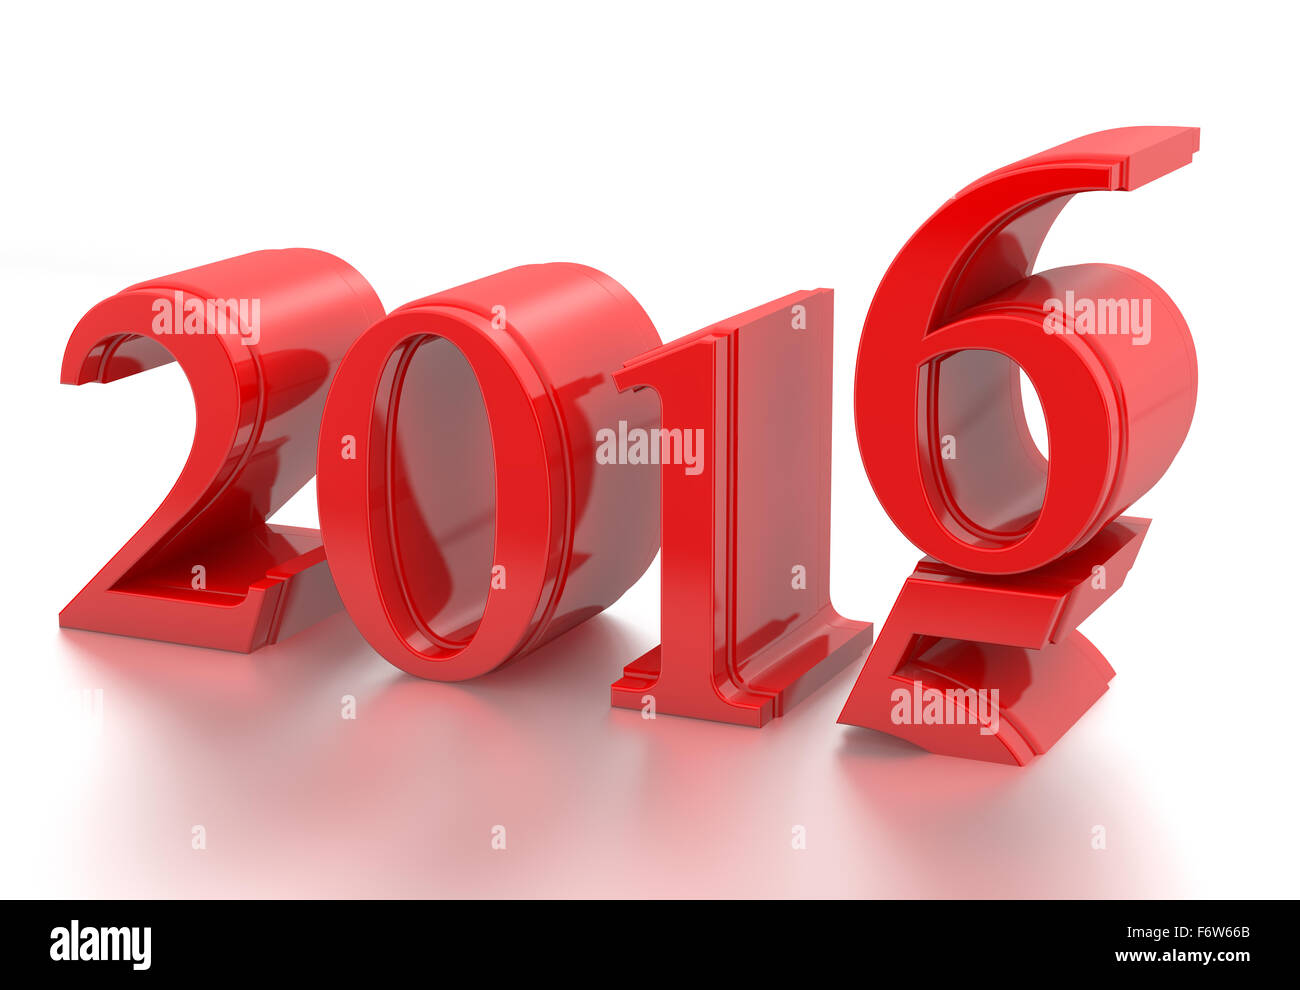 3d 2016. 2015-2016 changement représente la nouvelle année 2016, le rendu en trois dimensions Banque D'Images